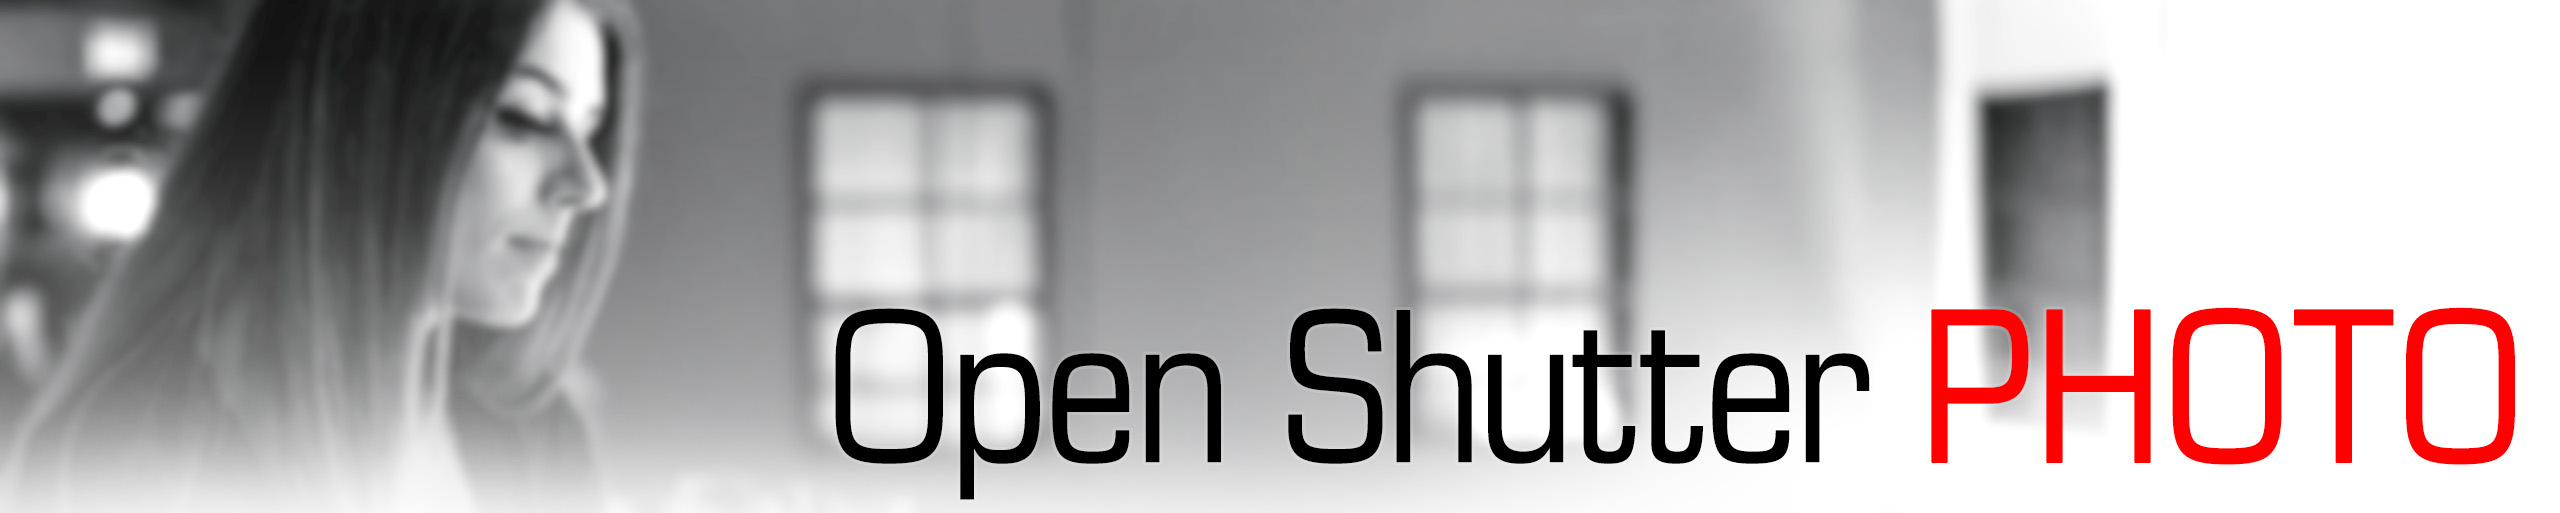 Open Shutter Photo